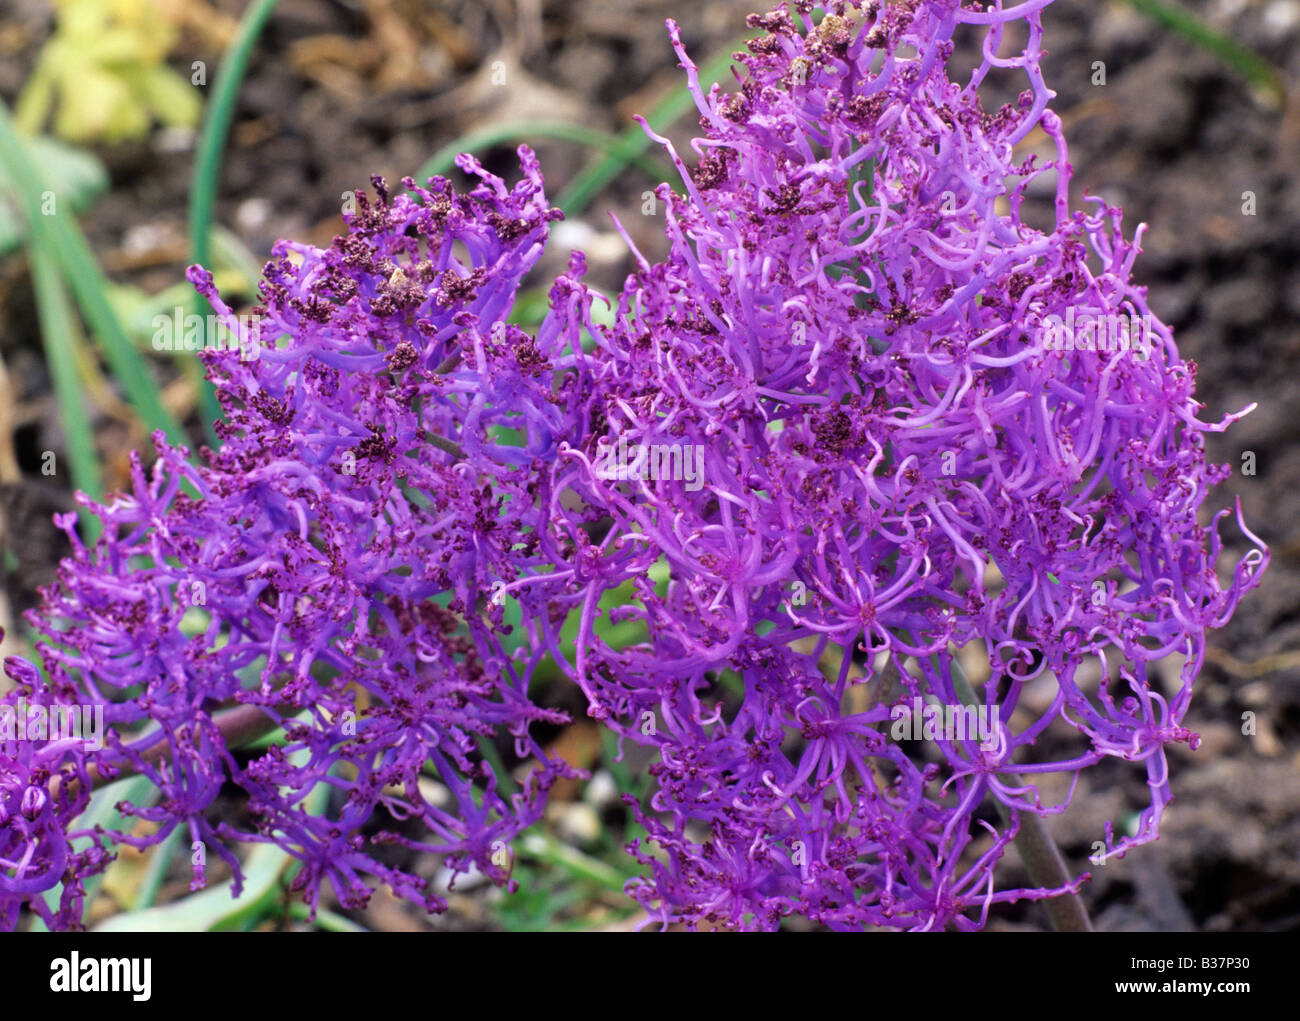 Muscari comosum 'Plumosum' purple flower garden plant Stock Photo